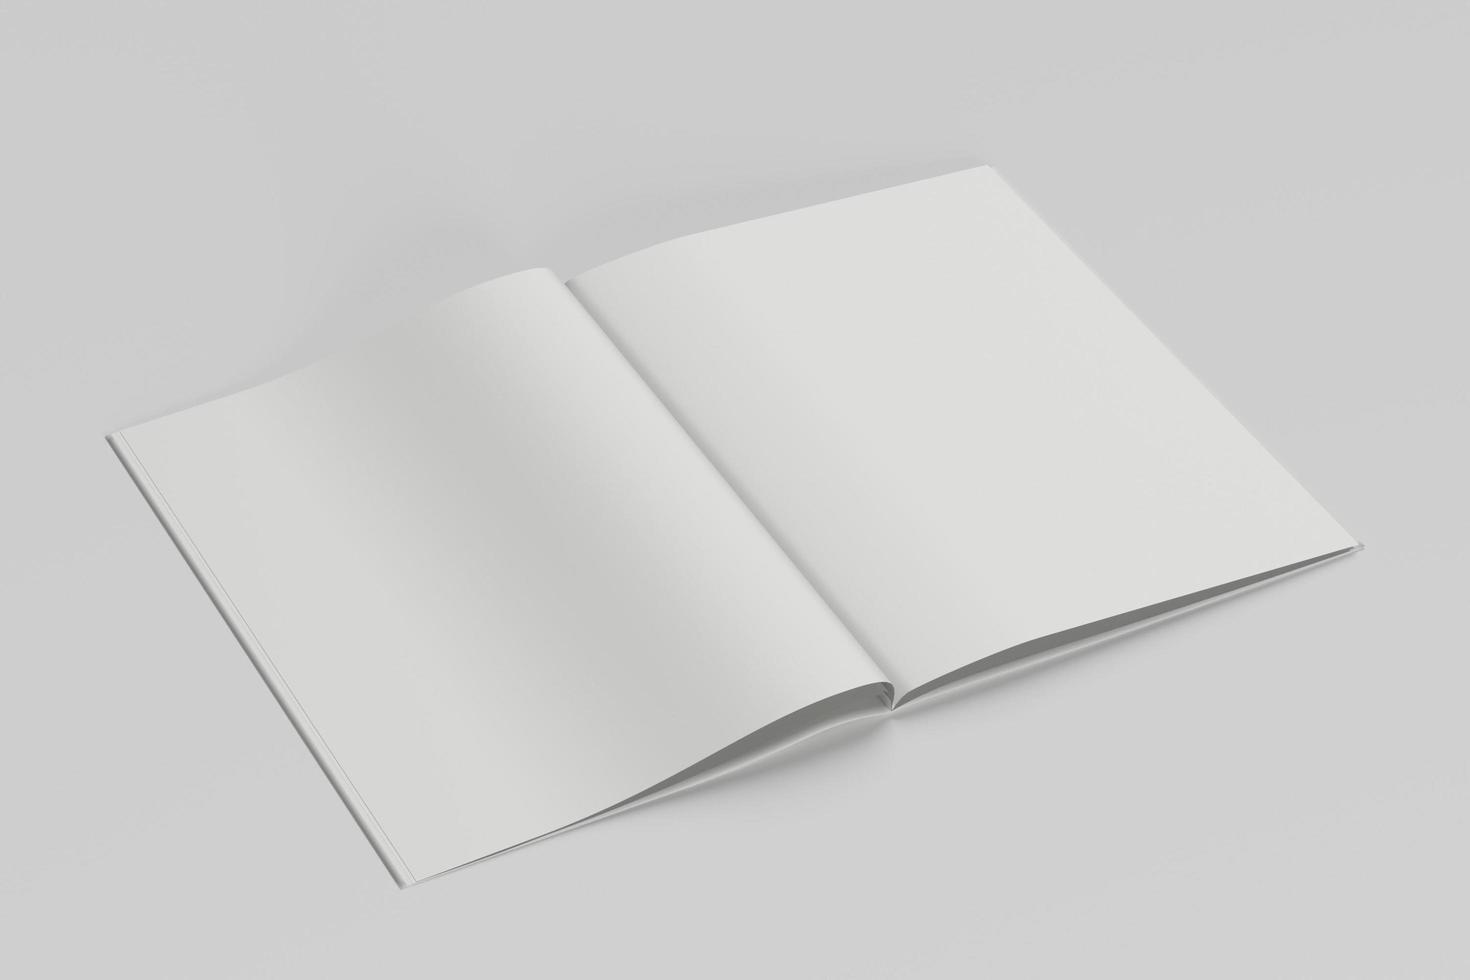 Prämie realistisch Broschüre Attrappe, Lehrmodell, Simulation mit Weiß Hintergrund foto